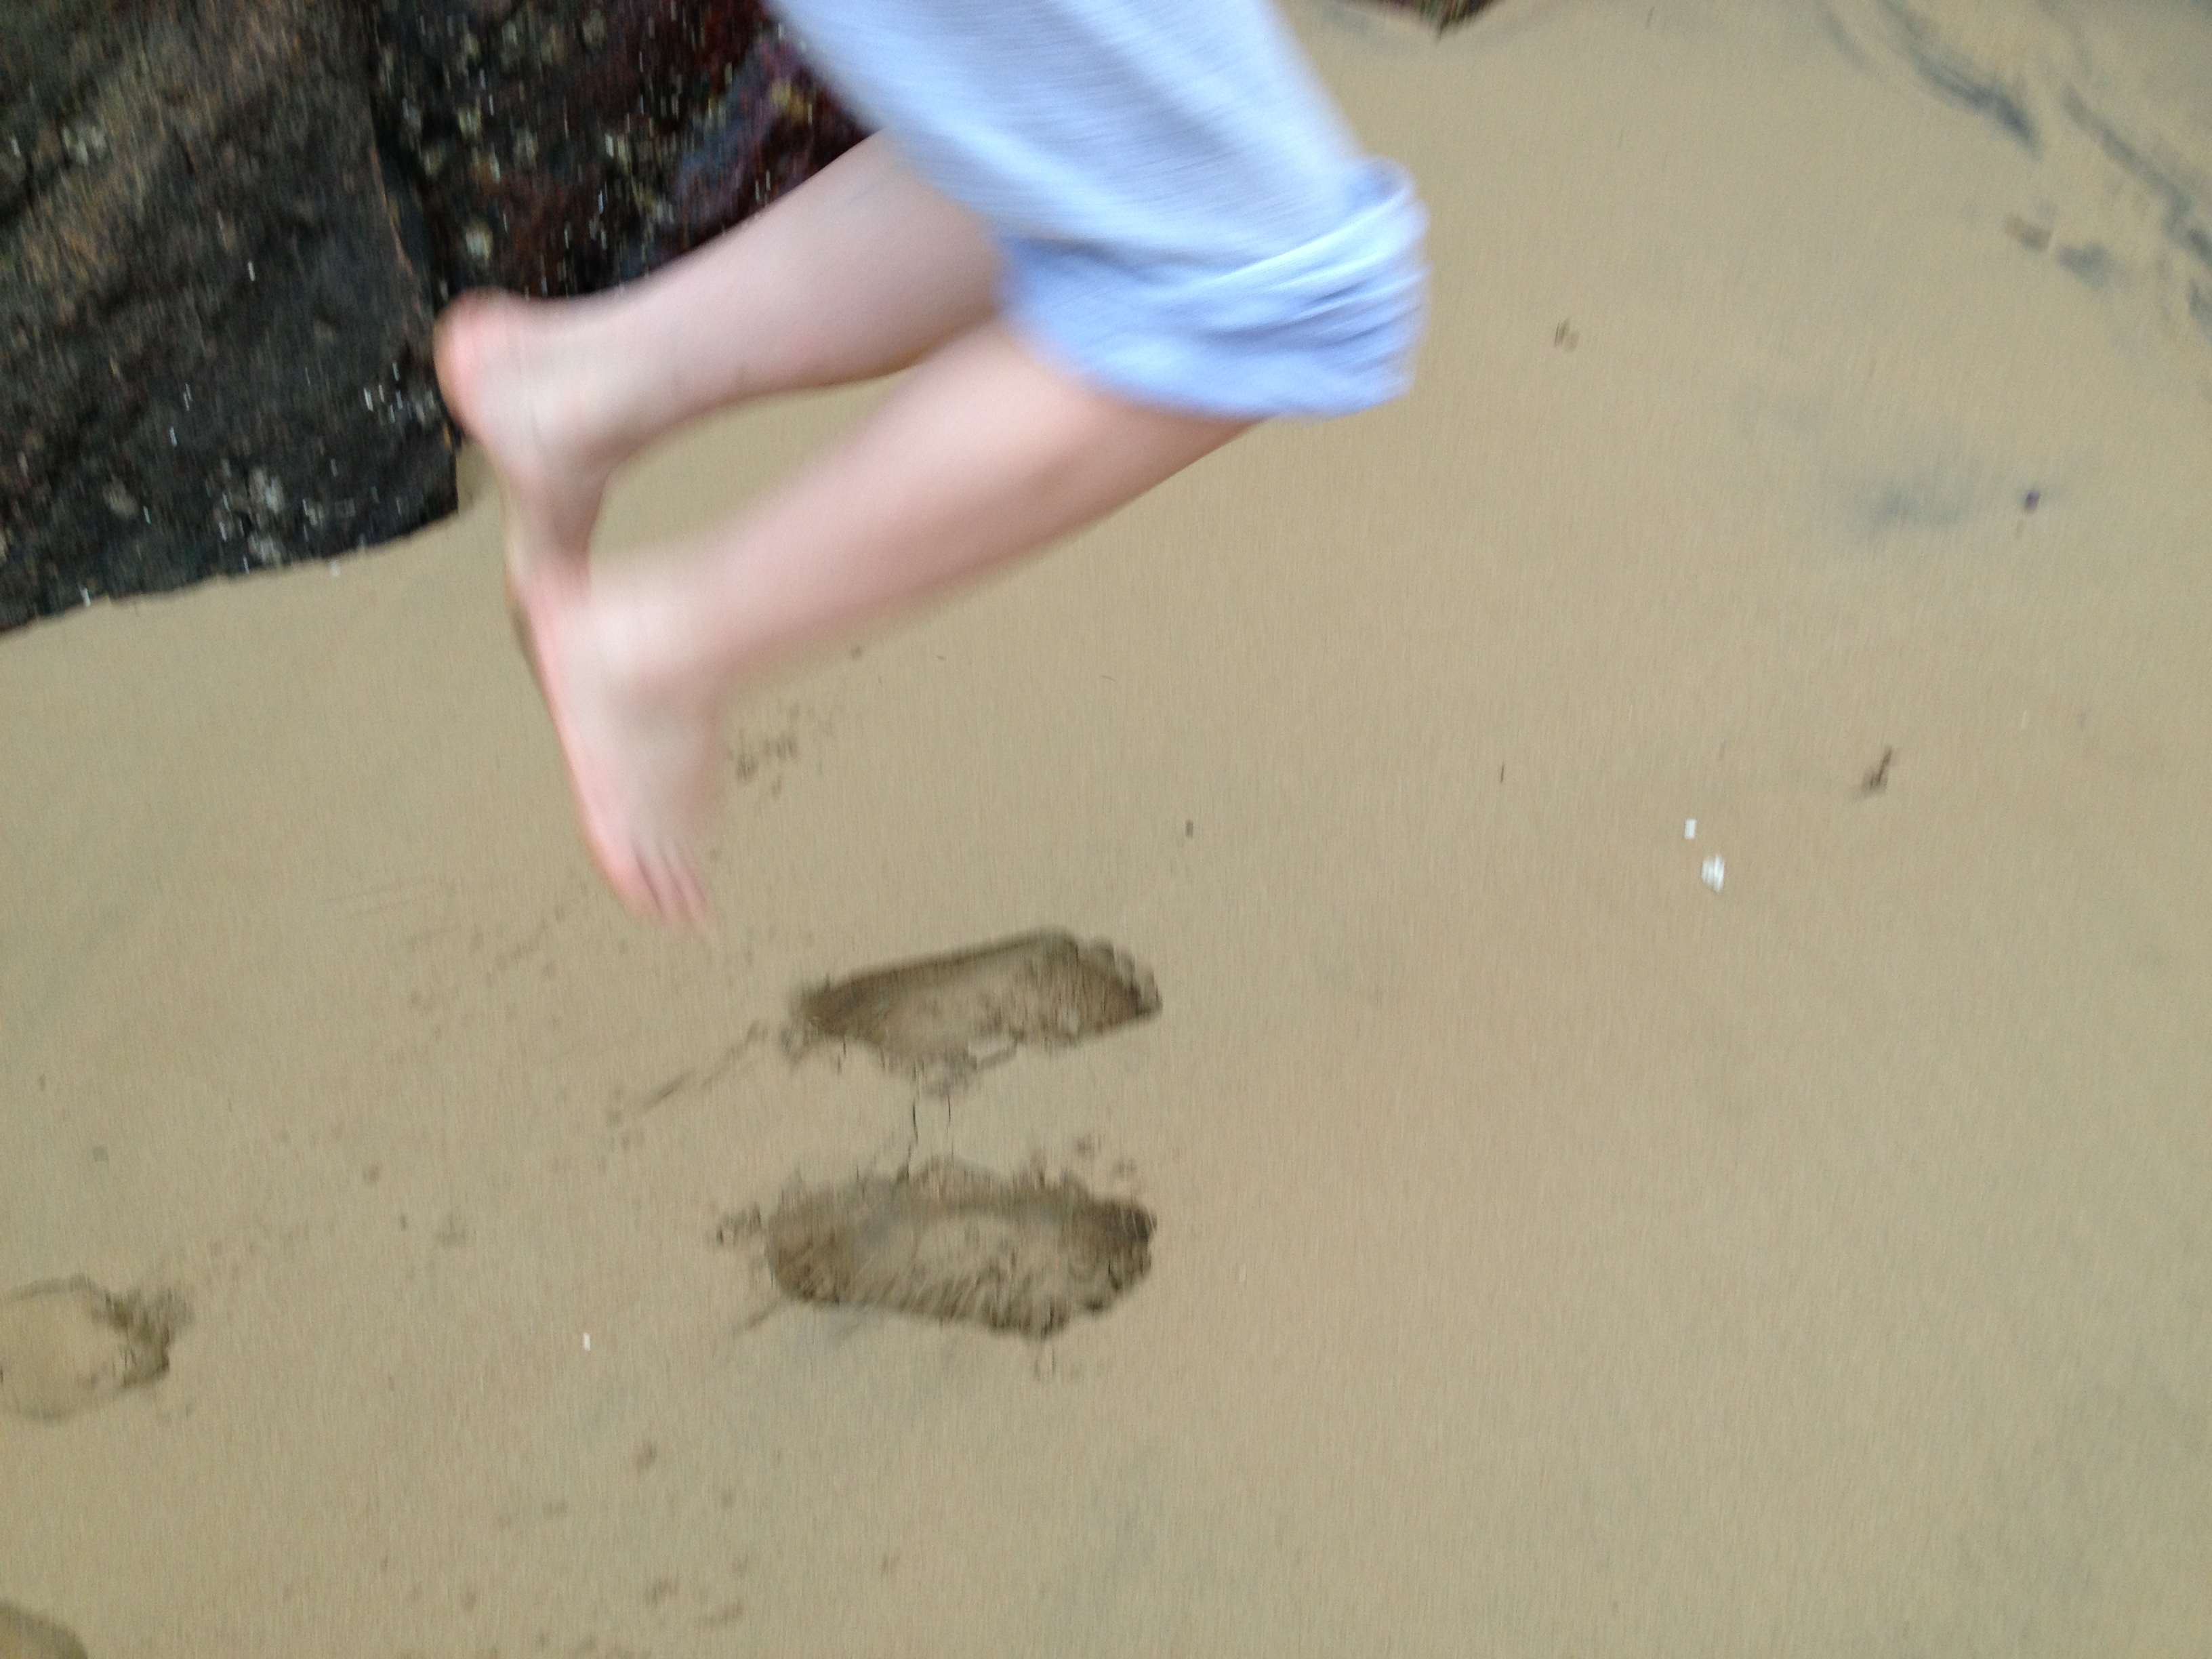 沙滩上的沙子又软又细,女儿光脚踩在上面